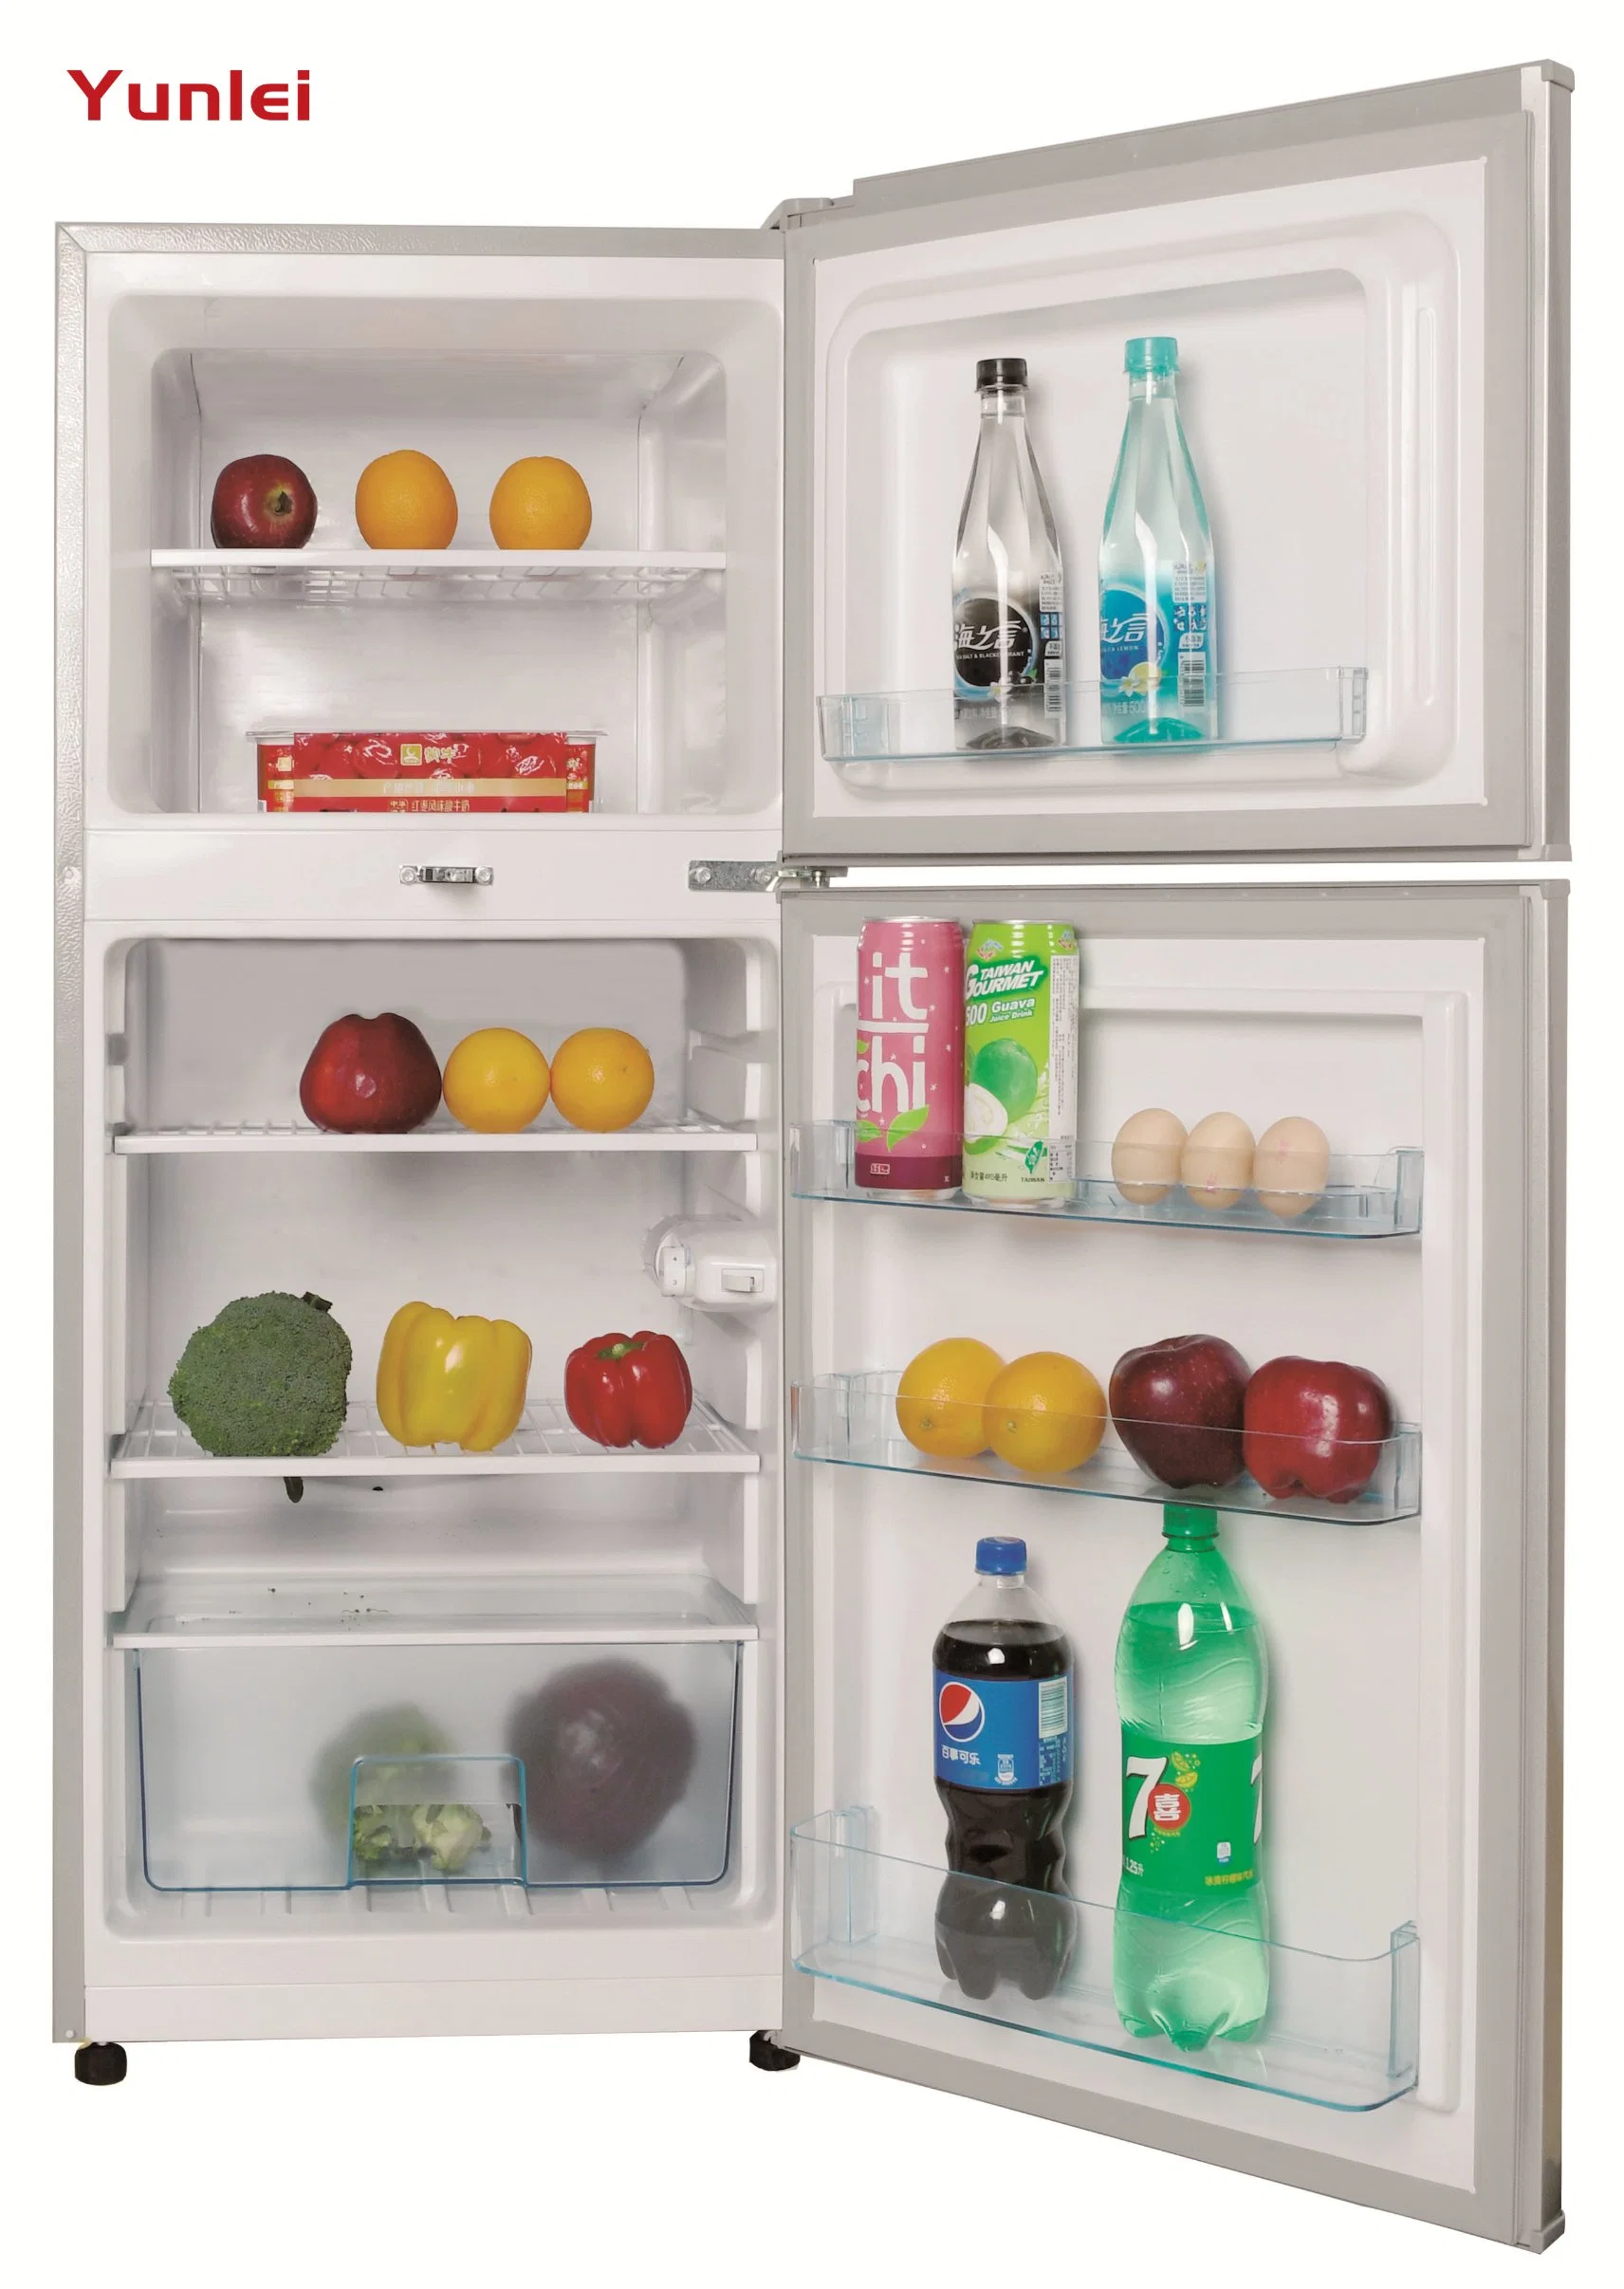 Yunlei-Hot Selling Double Door Top Freezer Home Use Top-Freezer Refrigerator